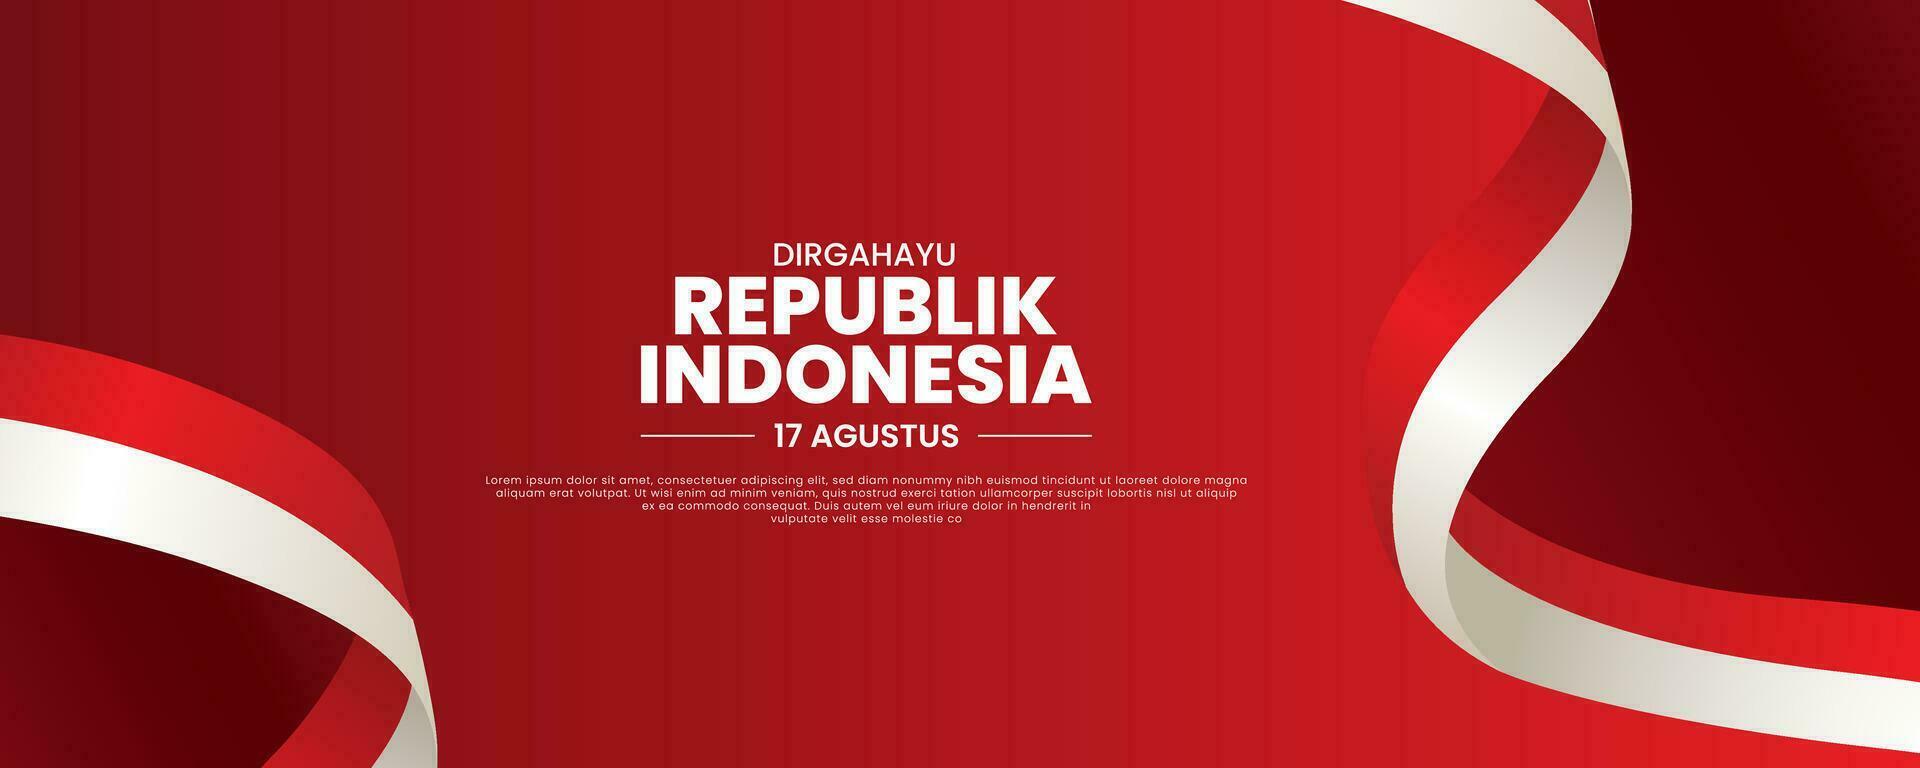 paesaggio bandiera modello di contento indonesiano indipendenza giorno, dirgahayu republik Indonesia, 17 agosto 1945. senso lungo vivere Indonesia, vettore illustrazione.